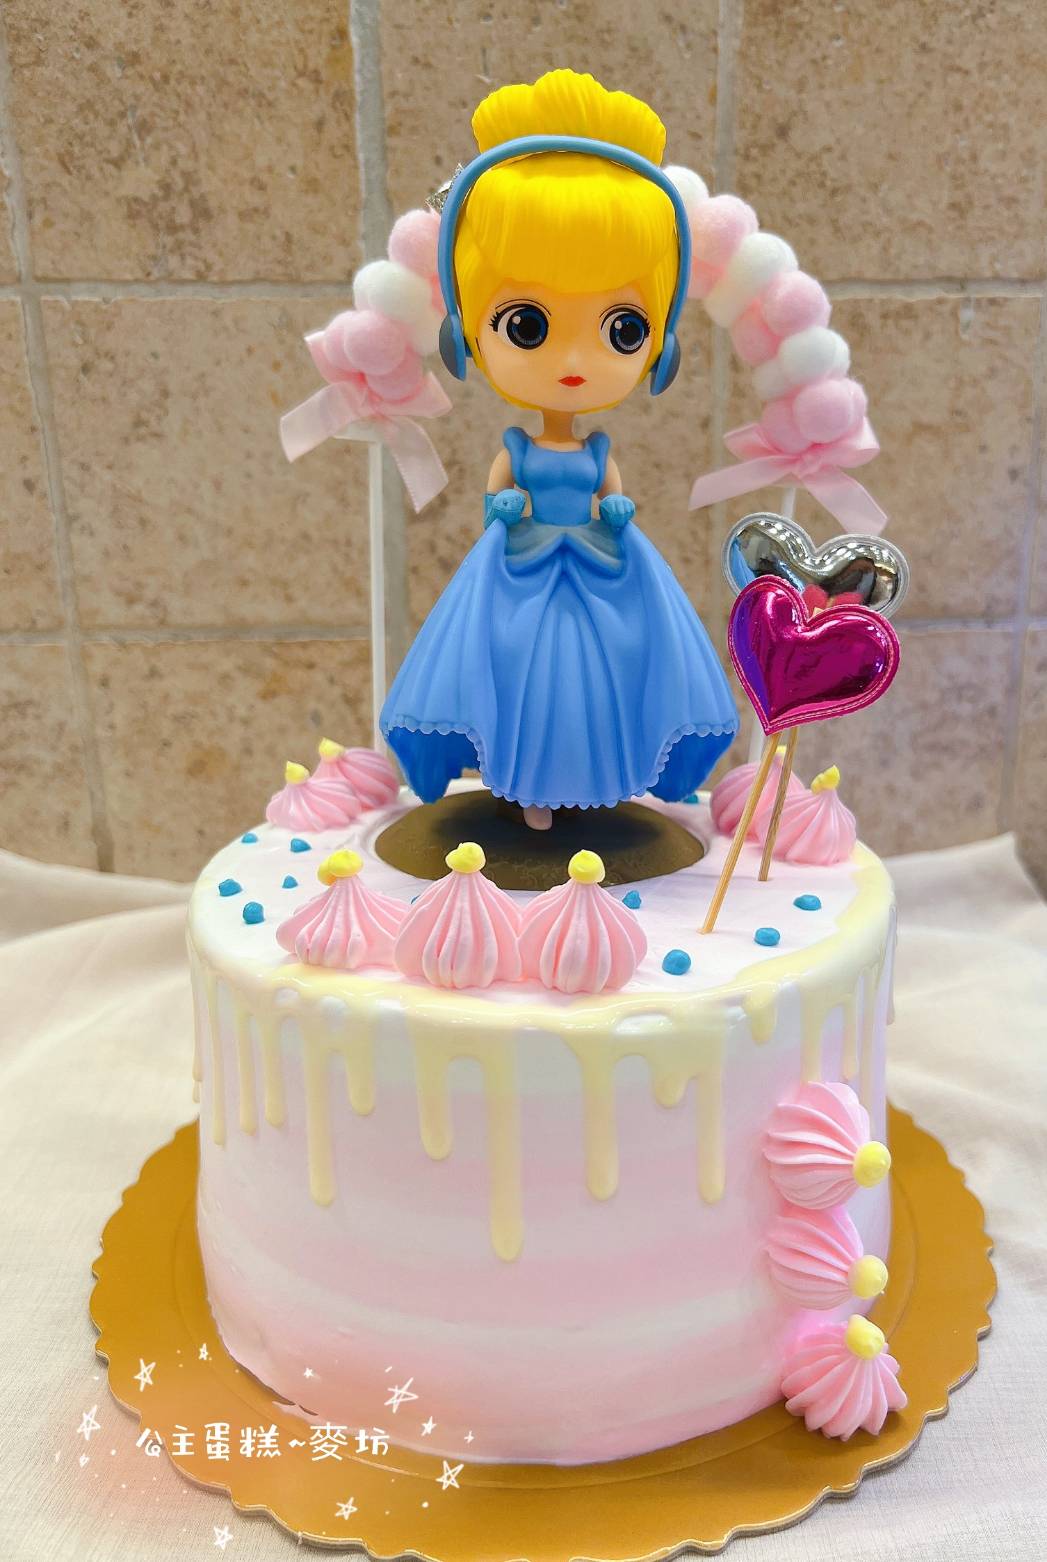 冰雪奇緣Elsa公主蛋糕DIY-妮可六歲生日蛋糕 @ 親親三寶與曼蒂媽咪 :: 痞客邦